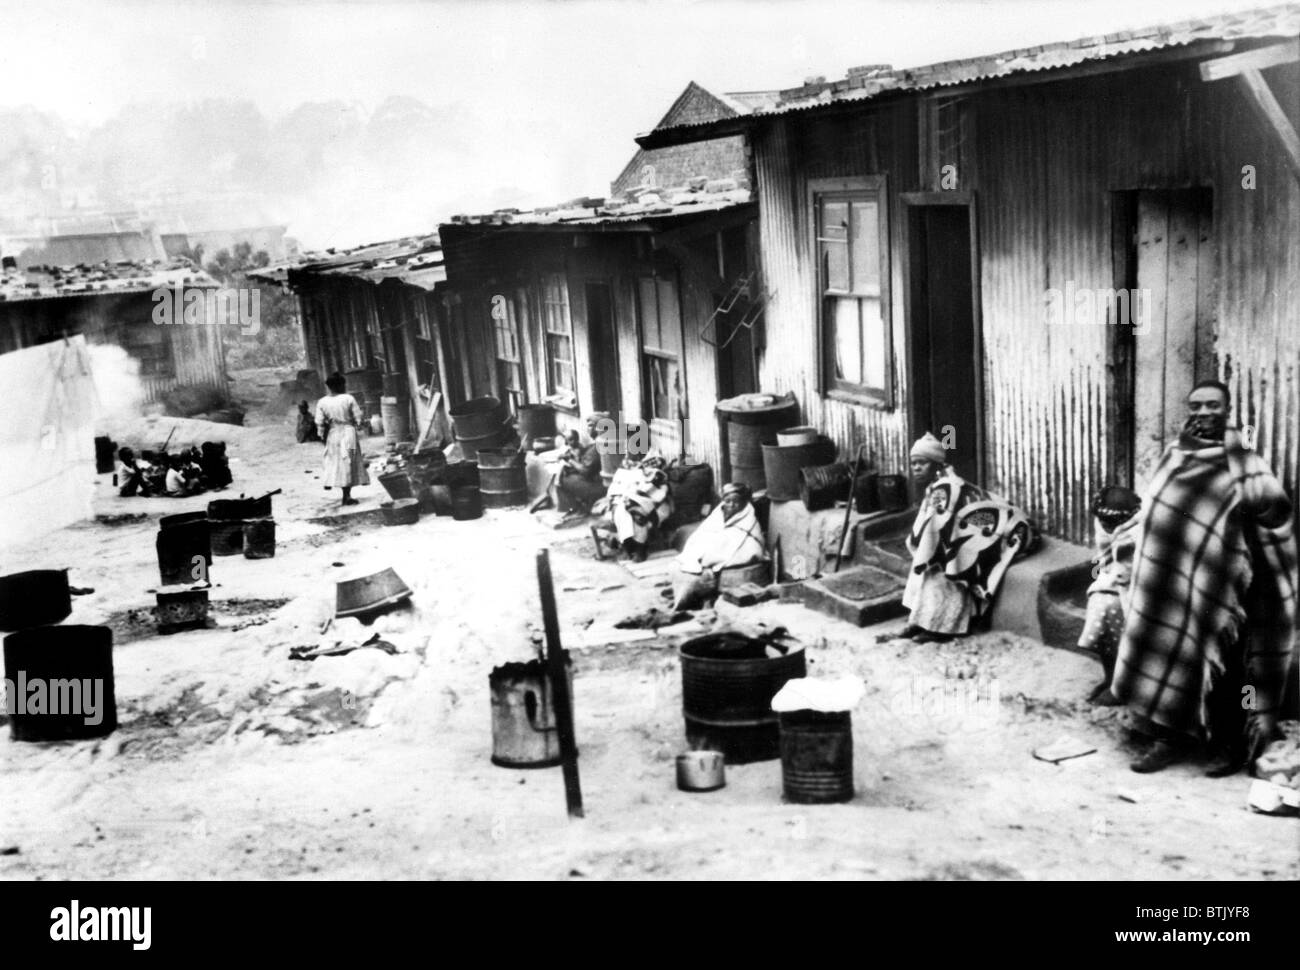 Barrios de Tugurios de Sophiatown cerca de Johannesburgo, Sudáfrica [Traslado lugar después de native disturbios cerca de la ciudad], 4/23/54 Foto de stock